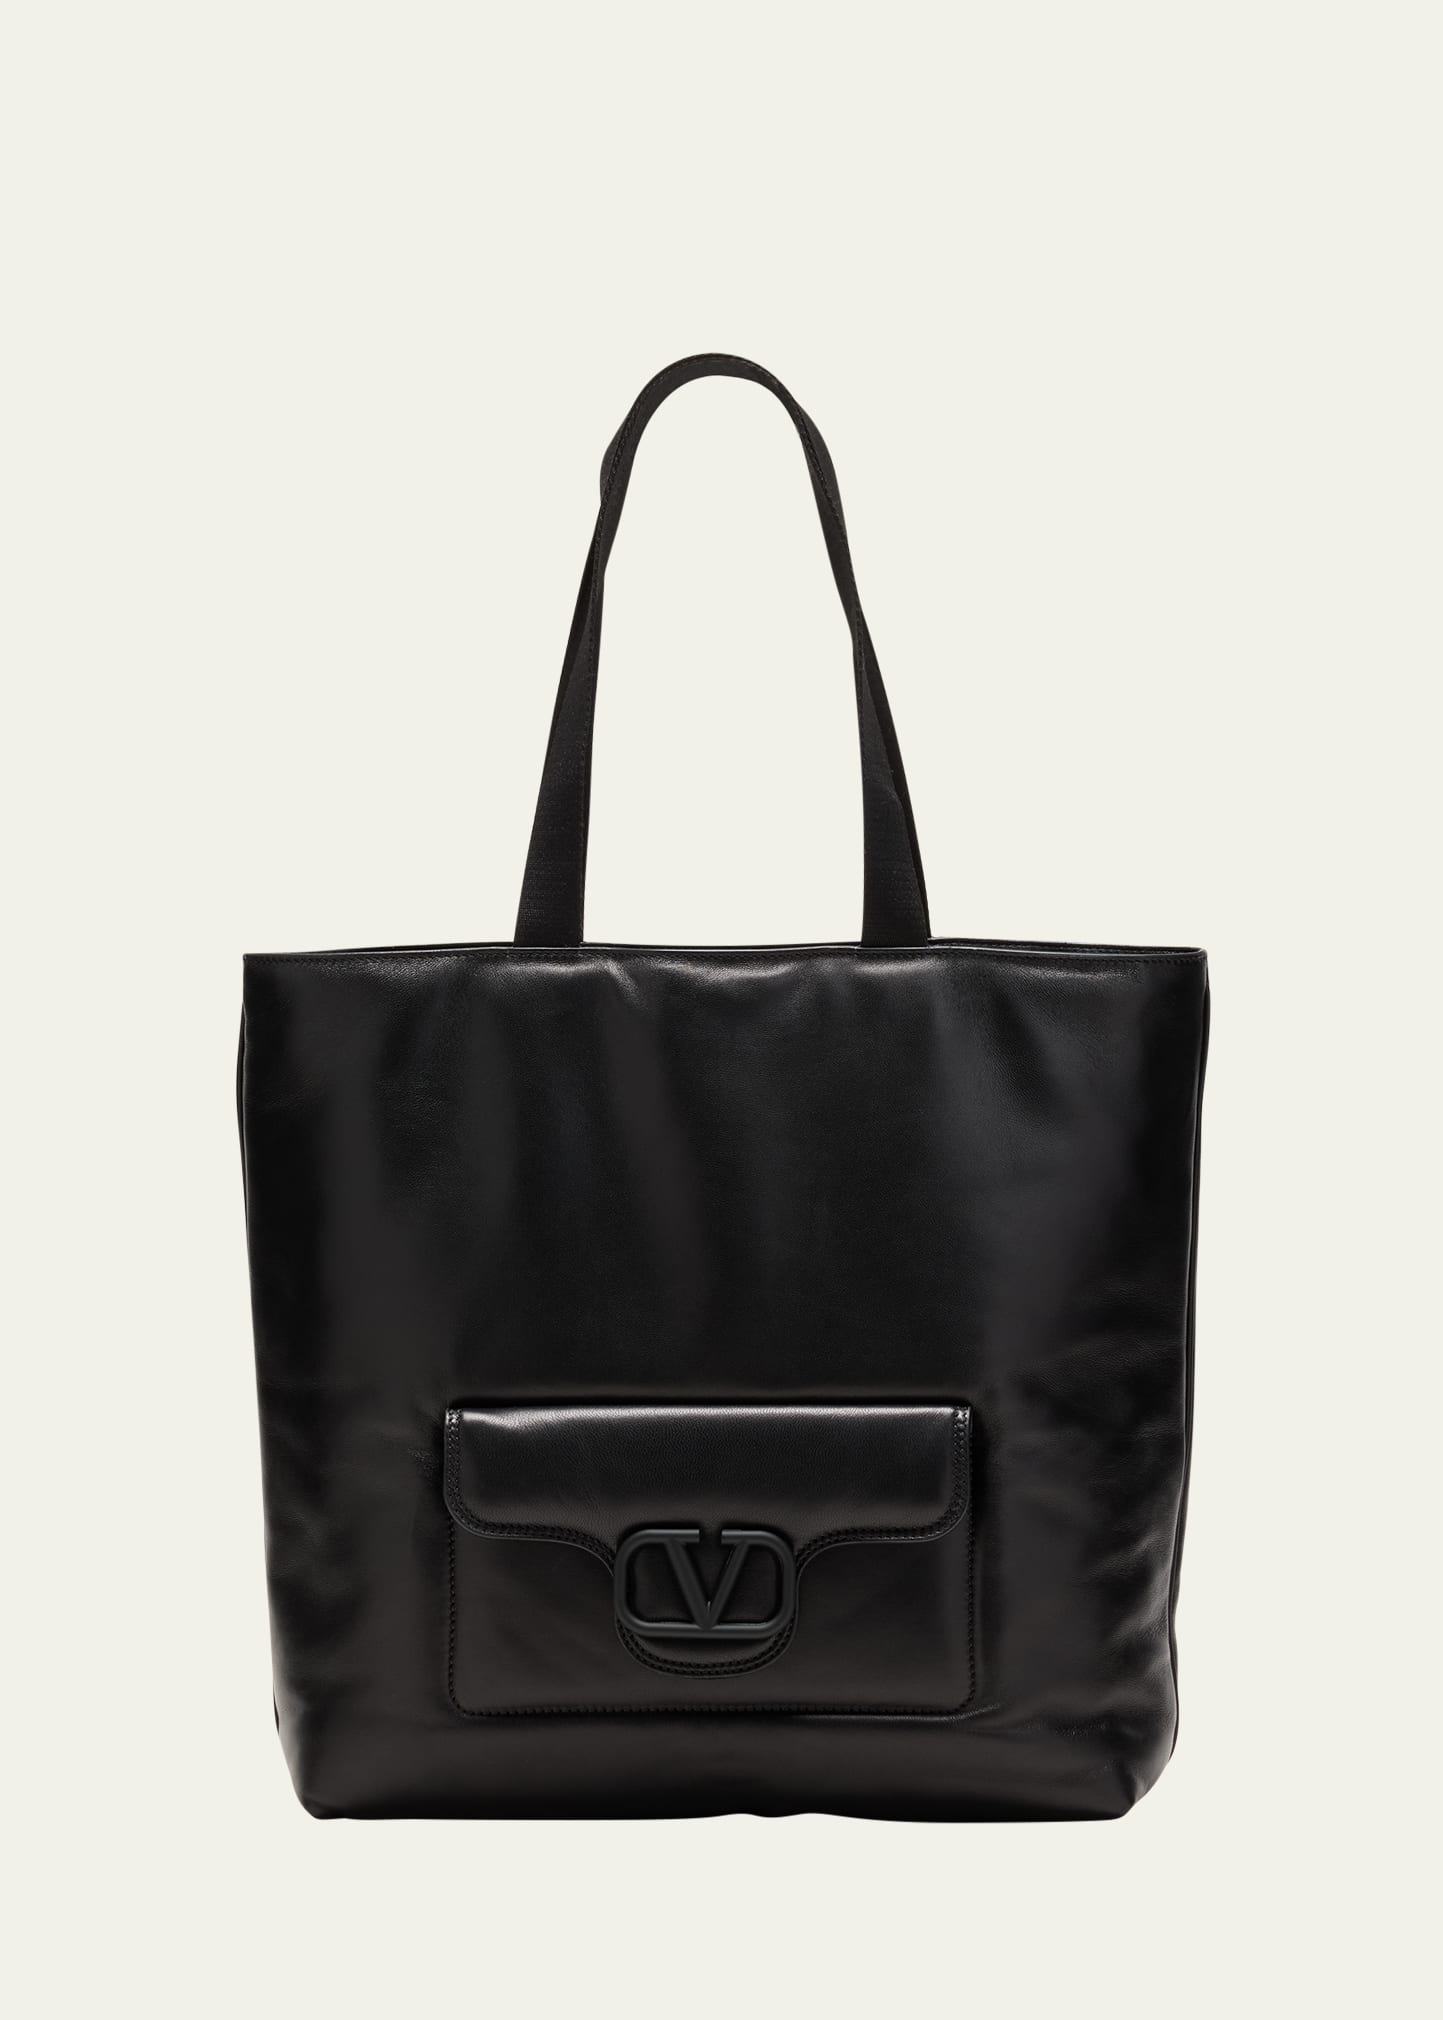 Valentino Garavani Men's Noir Leather Tote Bag In Nero